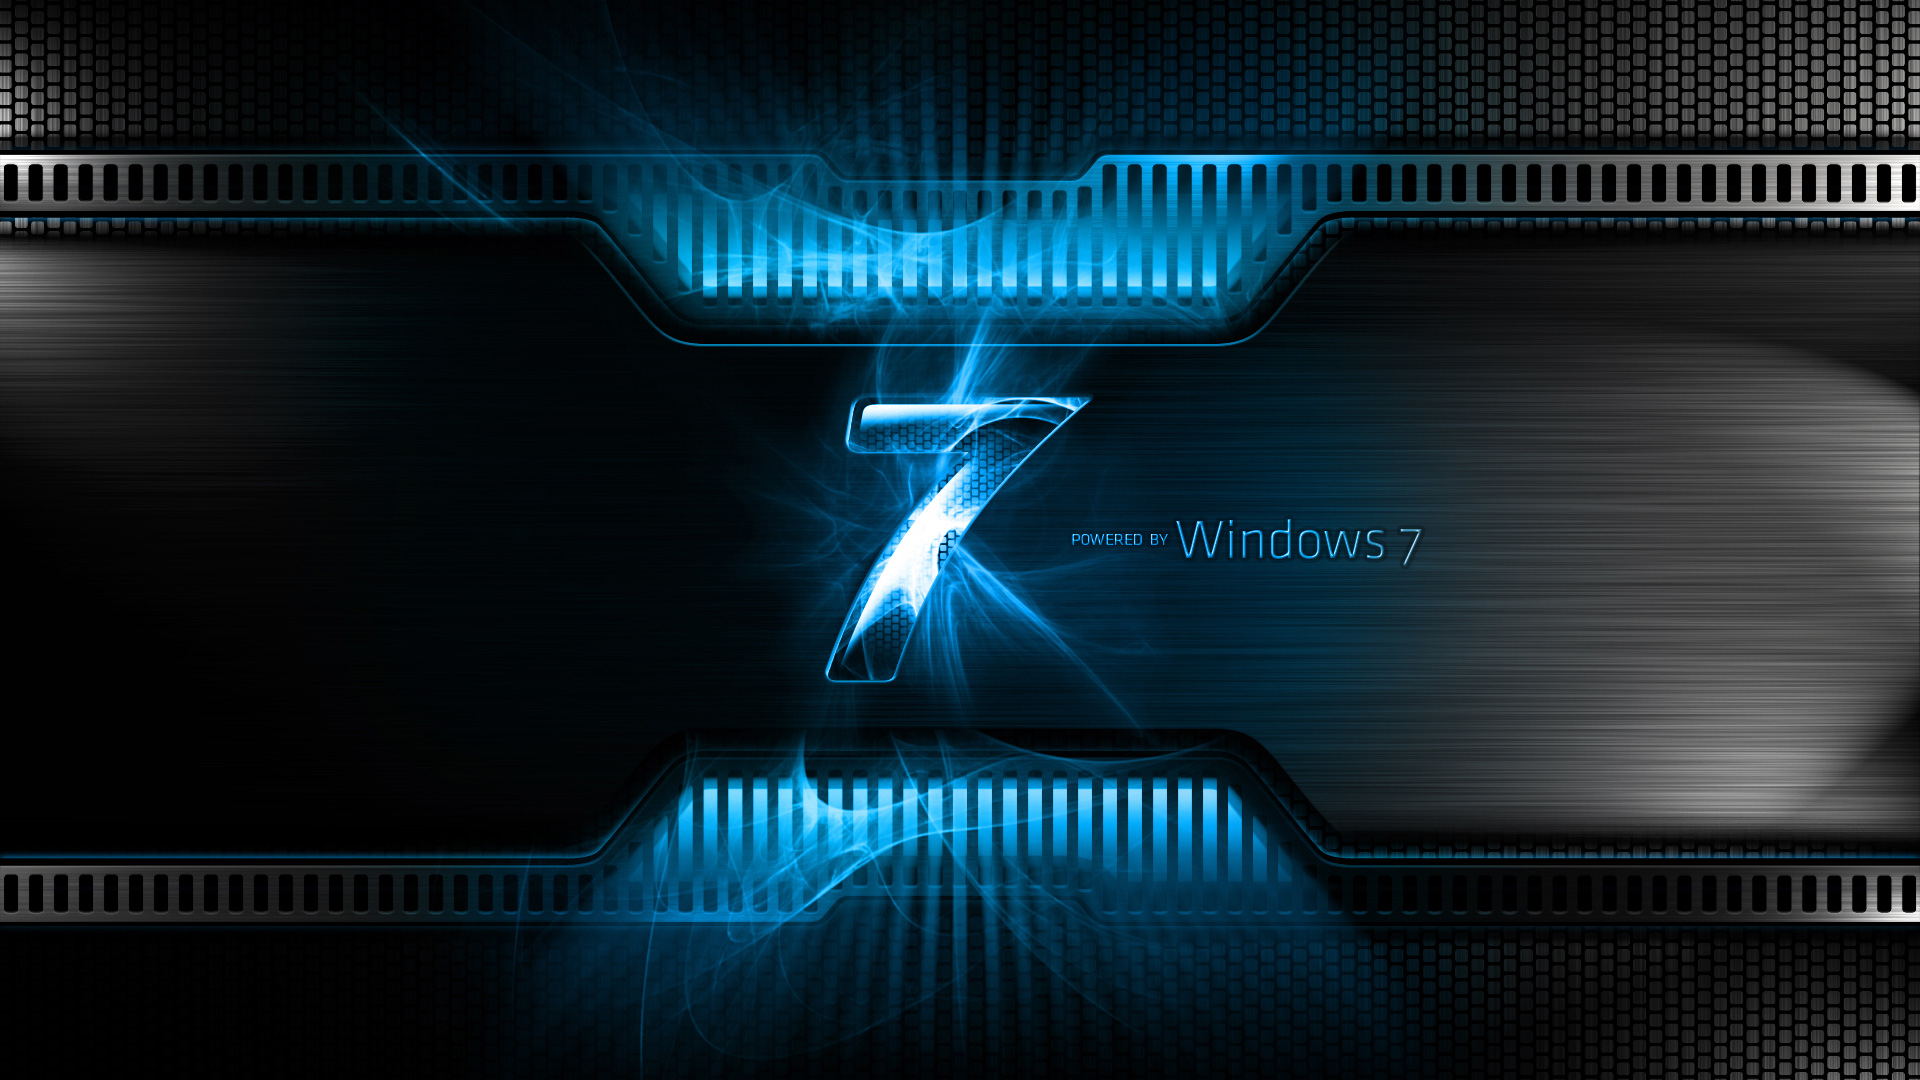 Hình nền chất lượng cao cho Windows 7: Cảm nhận sự khác biệt với hình nền chất lượng cao cho Windows